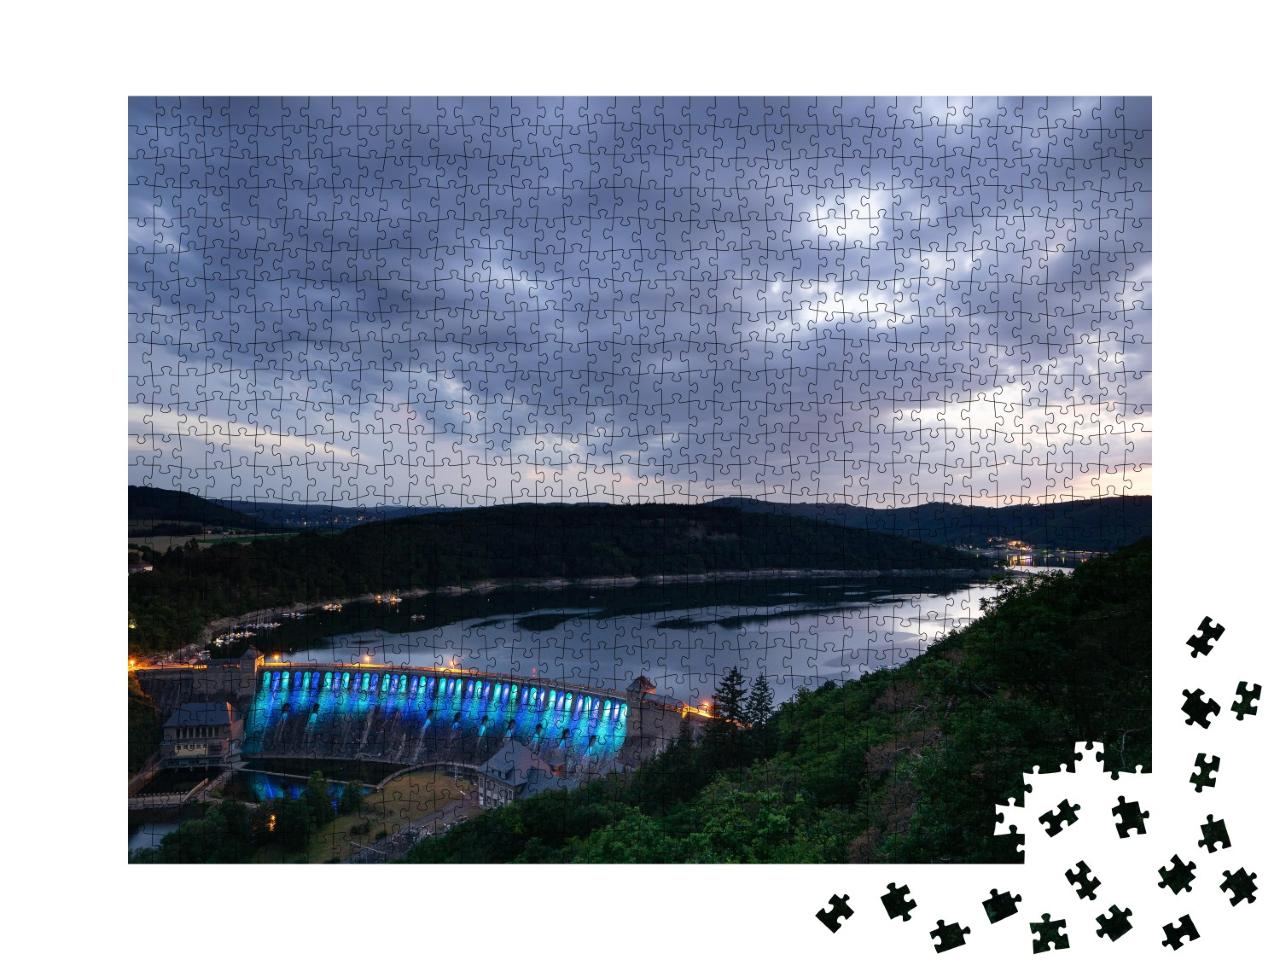 Puzzle 1000 Teile „Blick vom Aussichtspunkt Kleine Kanzel am Edersee bei Sonnenuntergang“